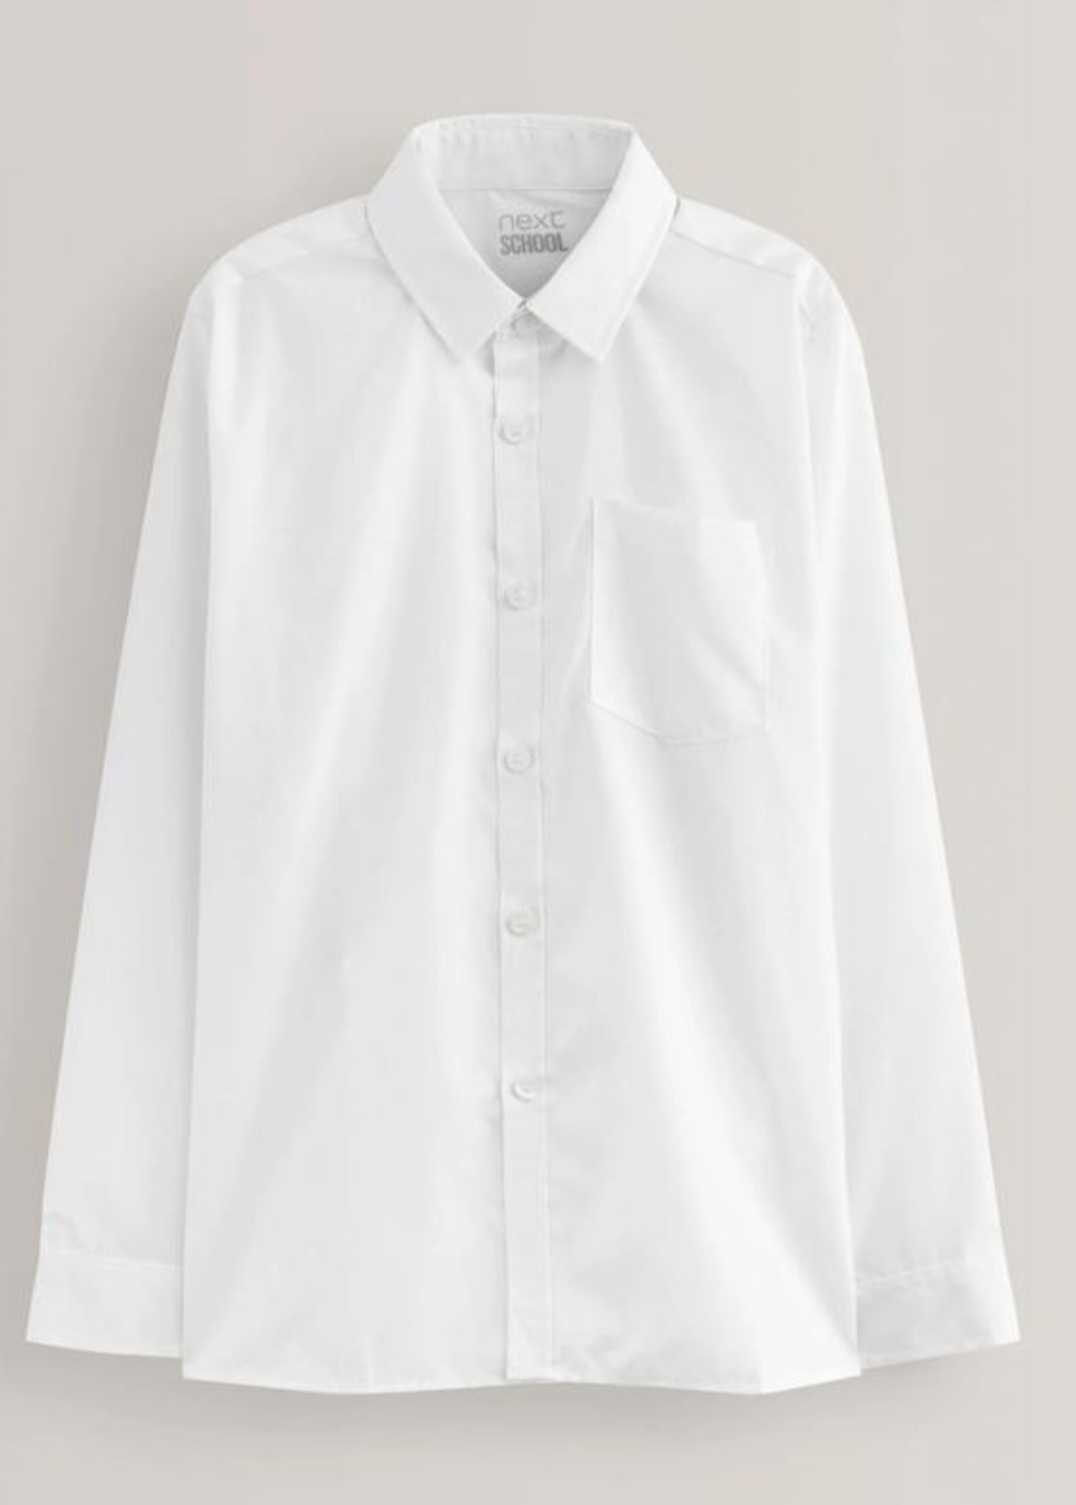 Рубашка школьная,  белая 12 лет,  фирмы NEXT